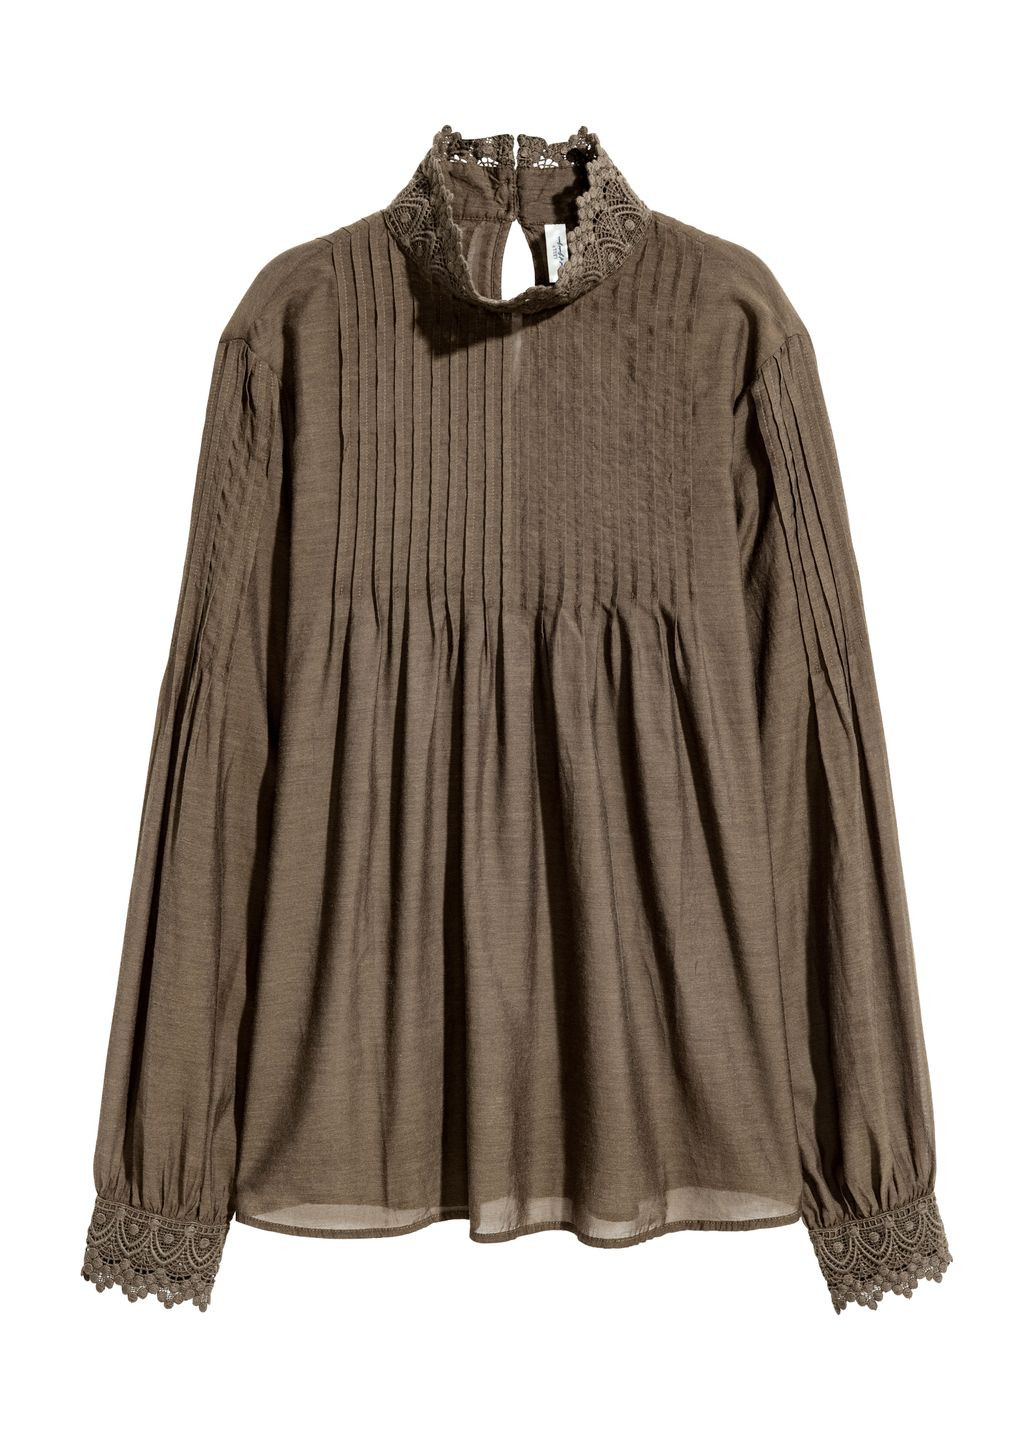 Оливковая (хаки) блуза демисезон,хаки, H&M